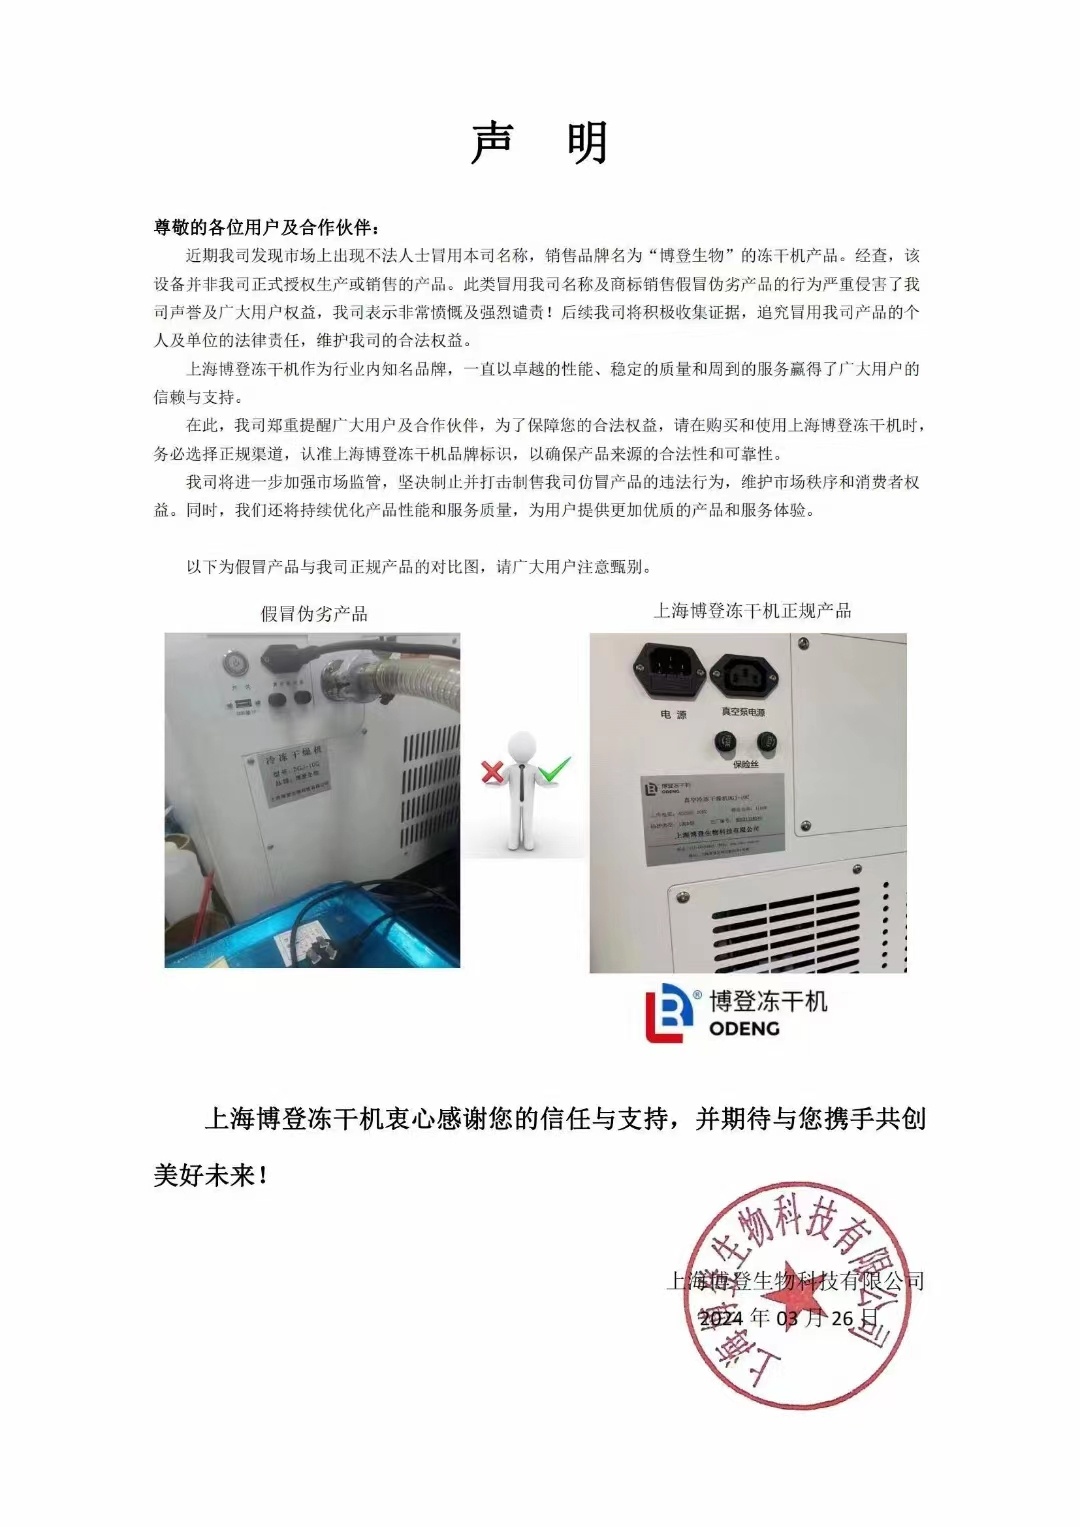 关于市场上出现仿冒上海博登冻干机设备的声明